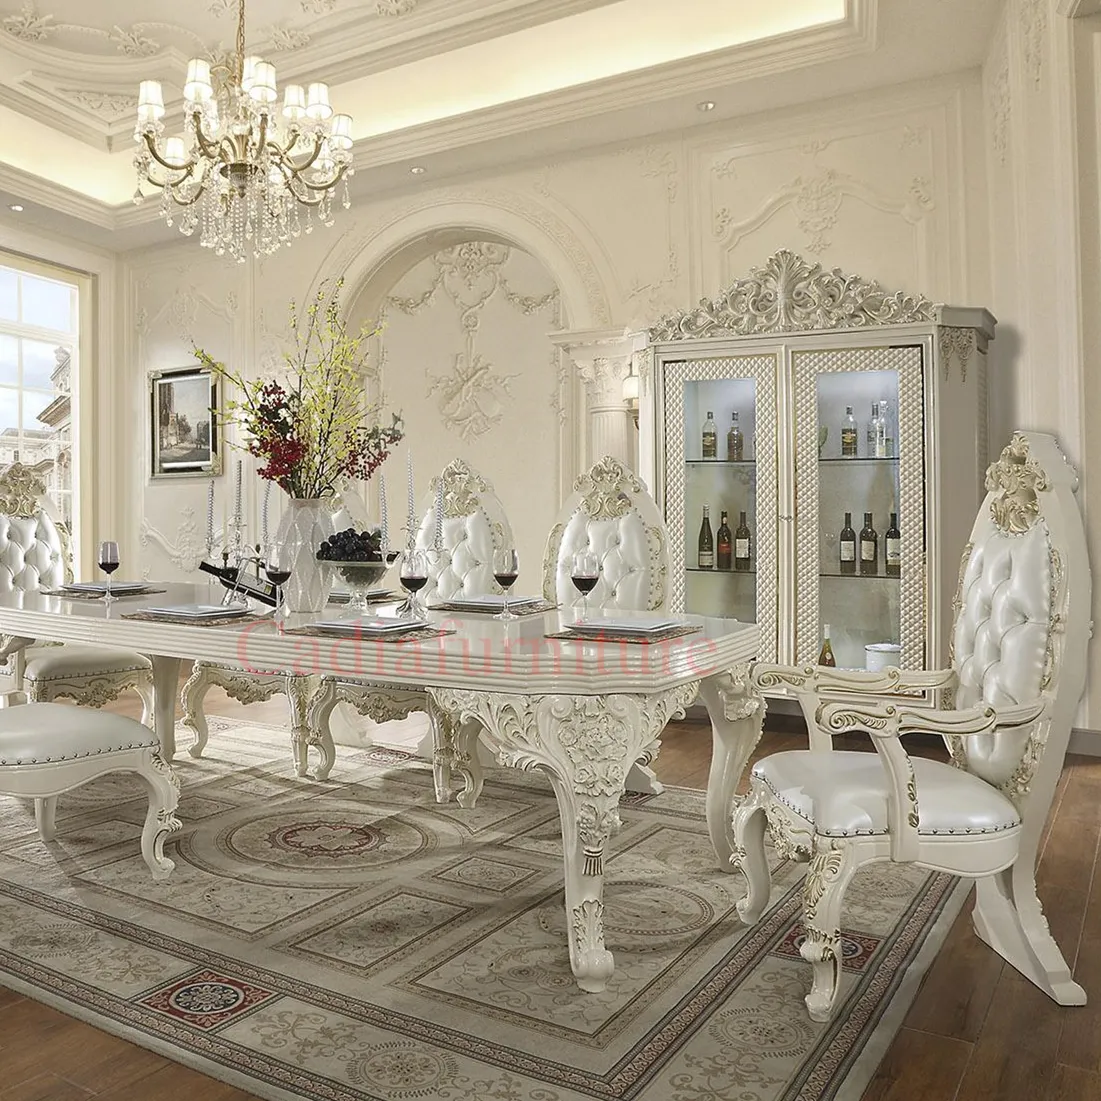 Мебель для столовой кремового цвета в европейском стиле, один стол с 8 стульями, обеденный стол и стулья из массива дерева